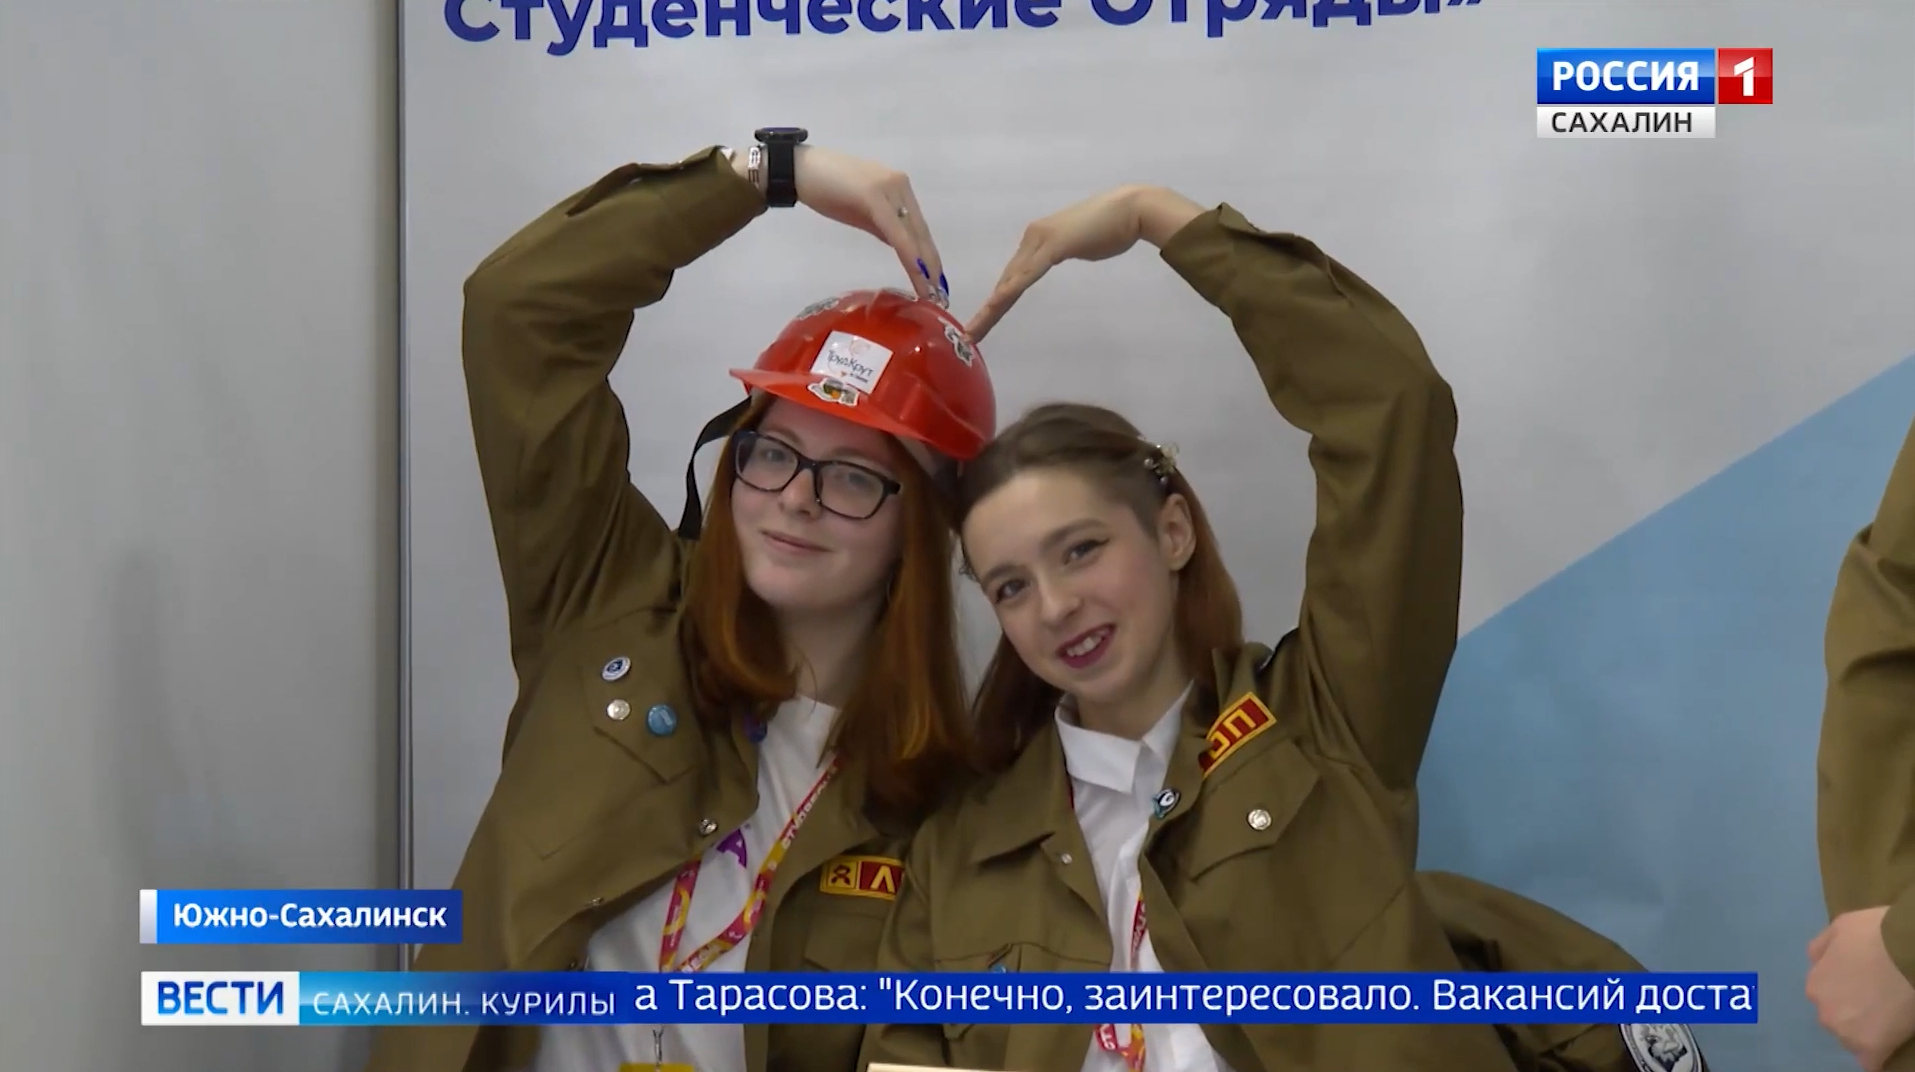 Региональный этап Всероссийской ярмарки трудоустройства прошел в Сахалинской области